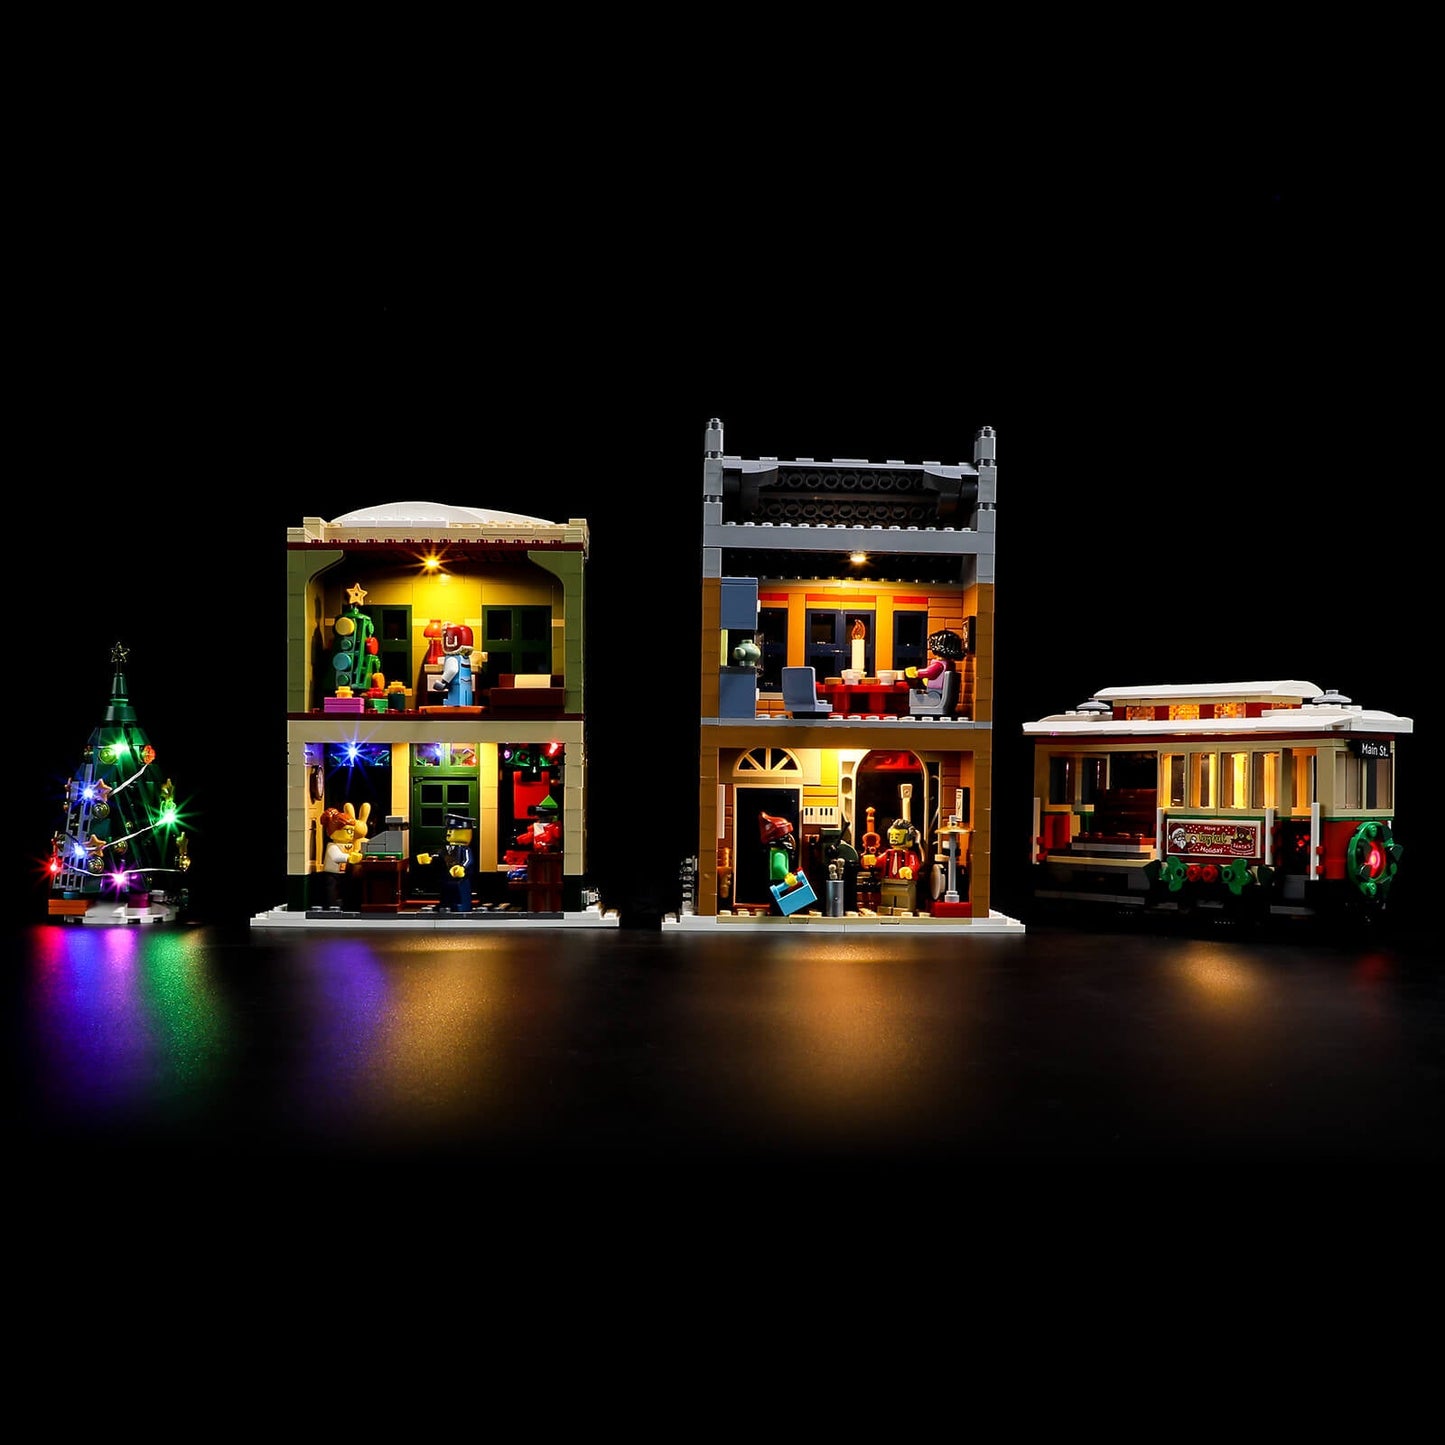 Lego Holiday Main Street 10308 moc